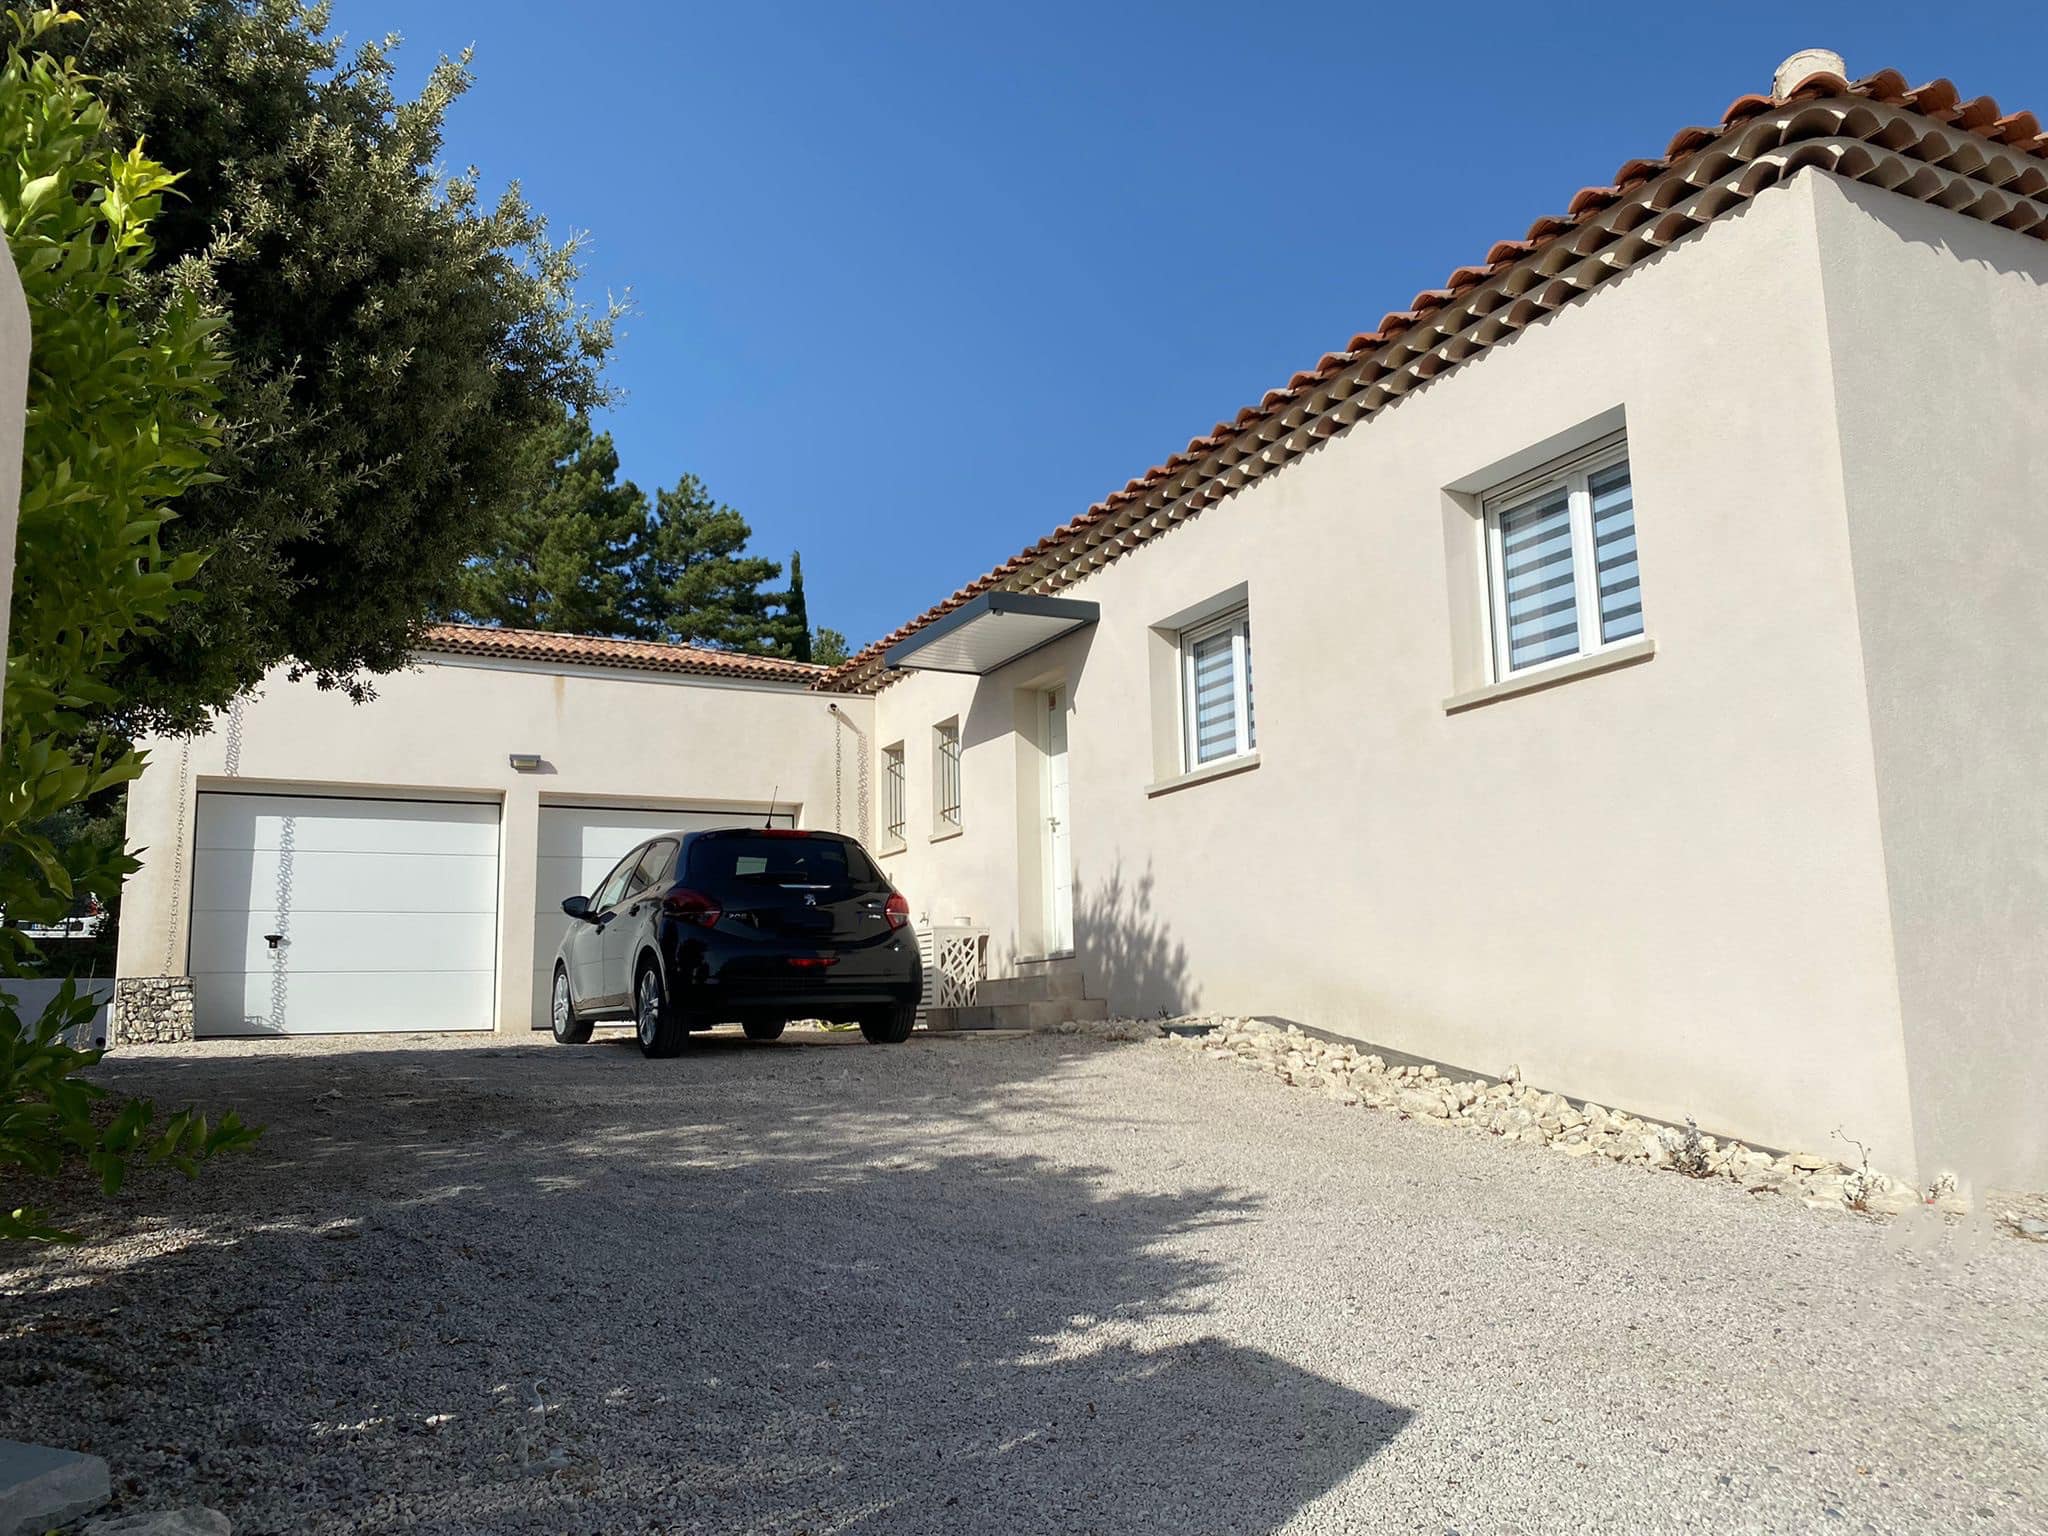 Maison en L avec double garage dans les Bouches-du-Rhône